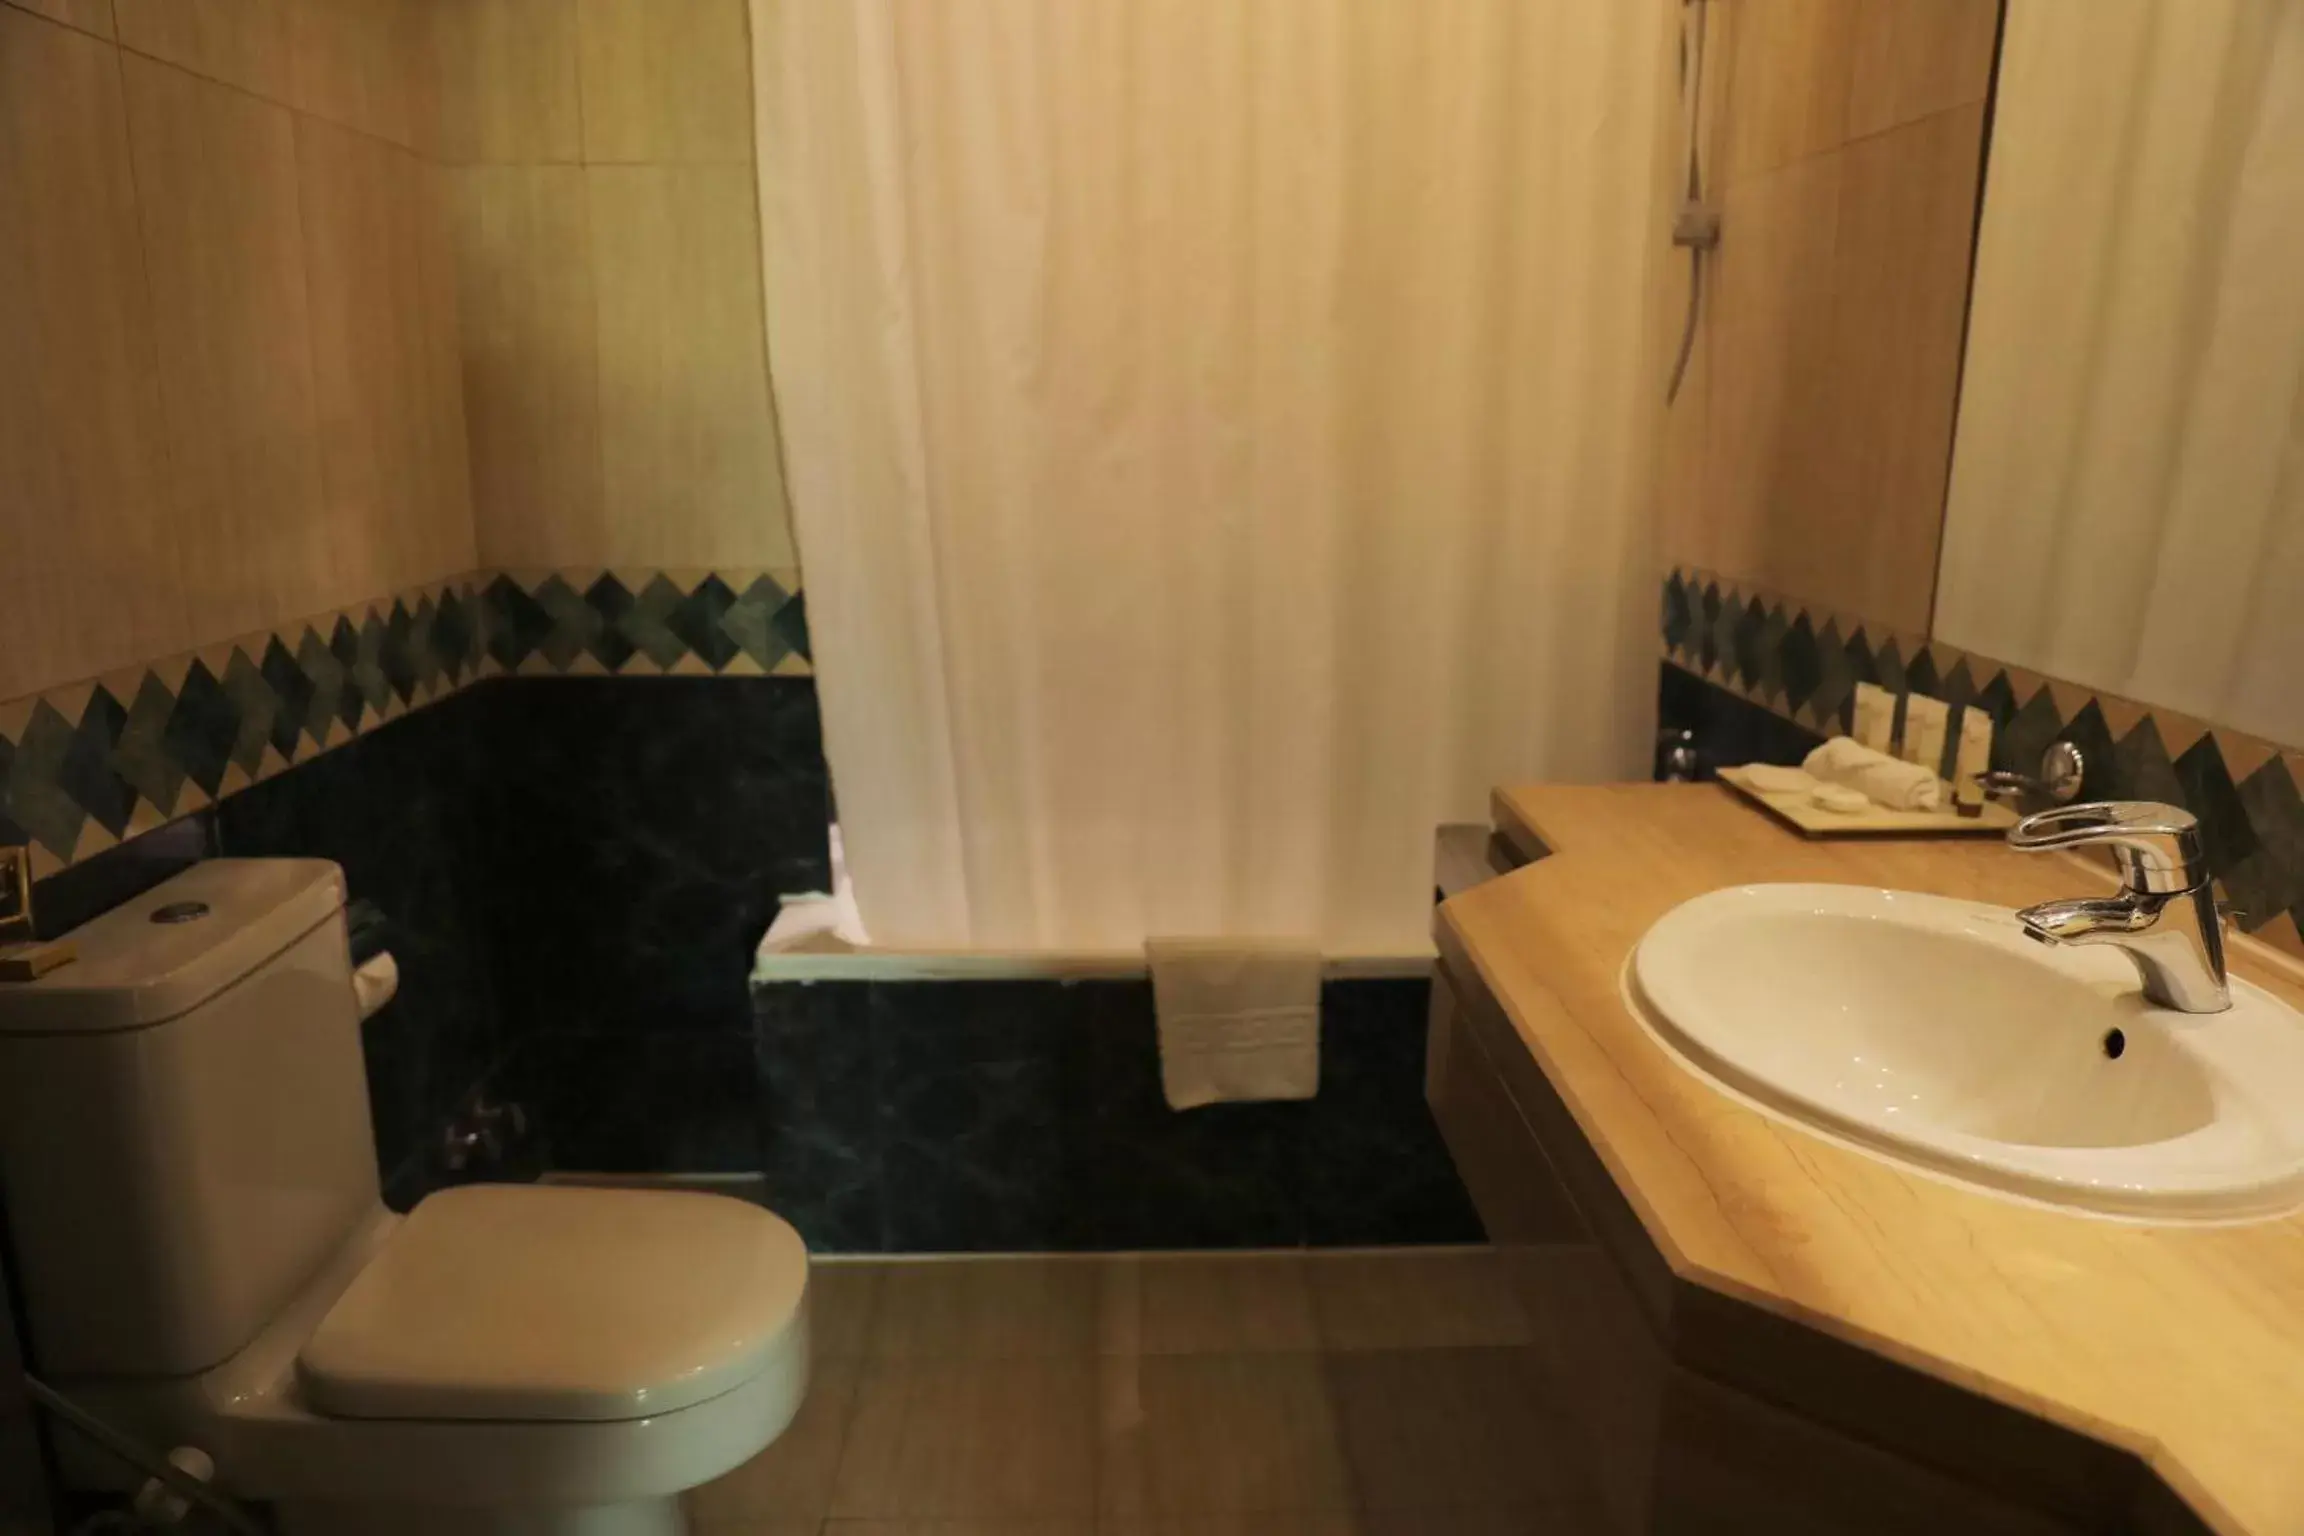 Bathroom in Triumph Plaza Hotel